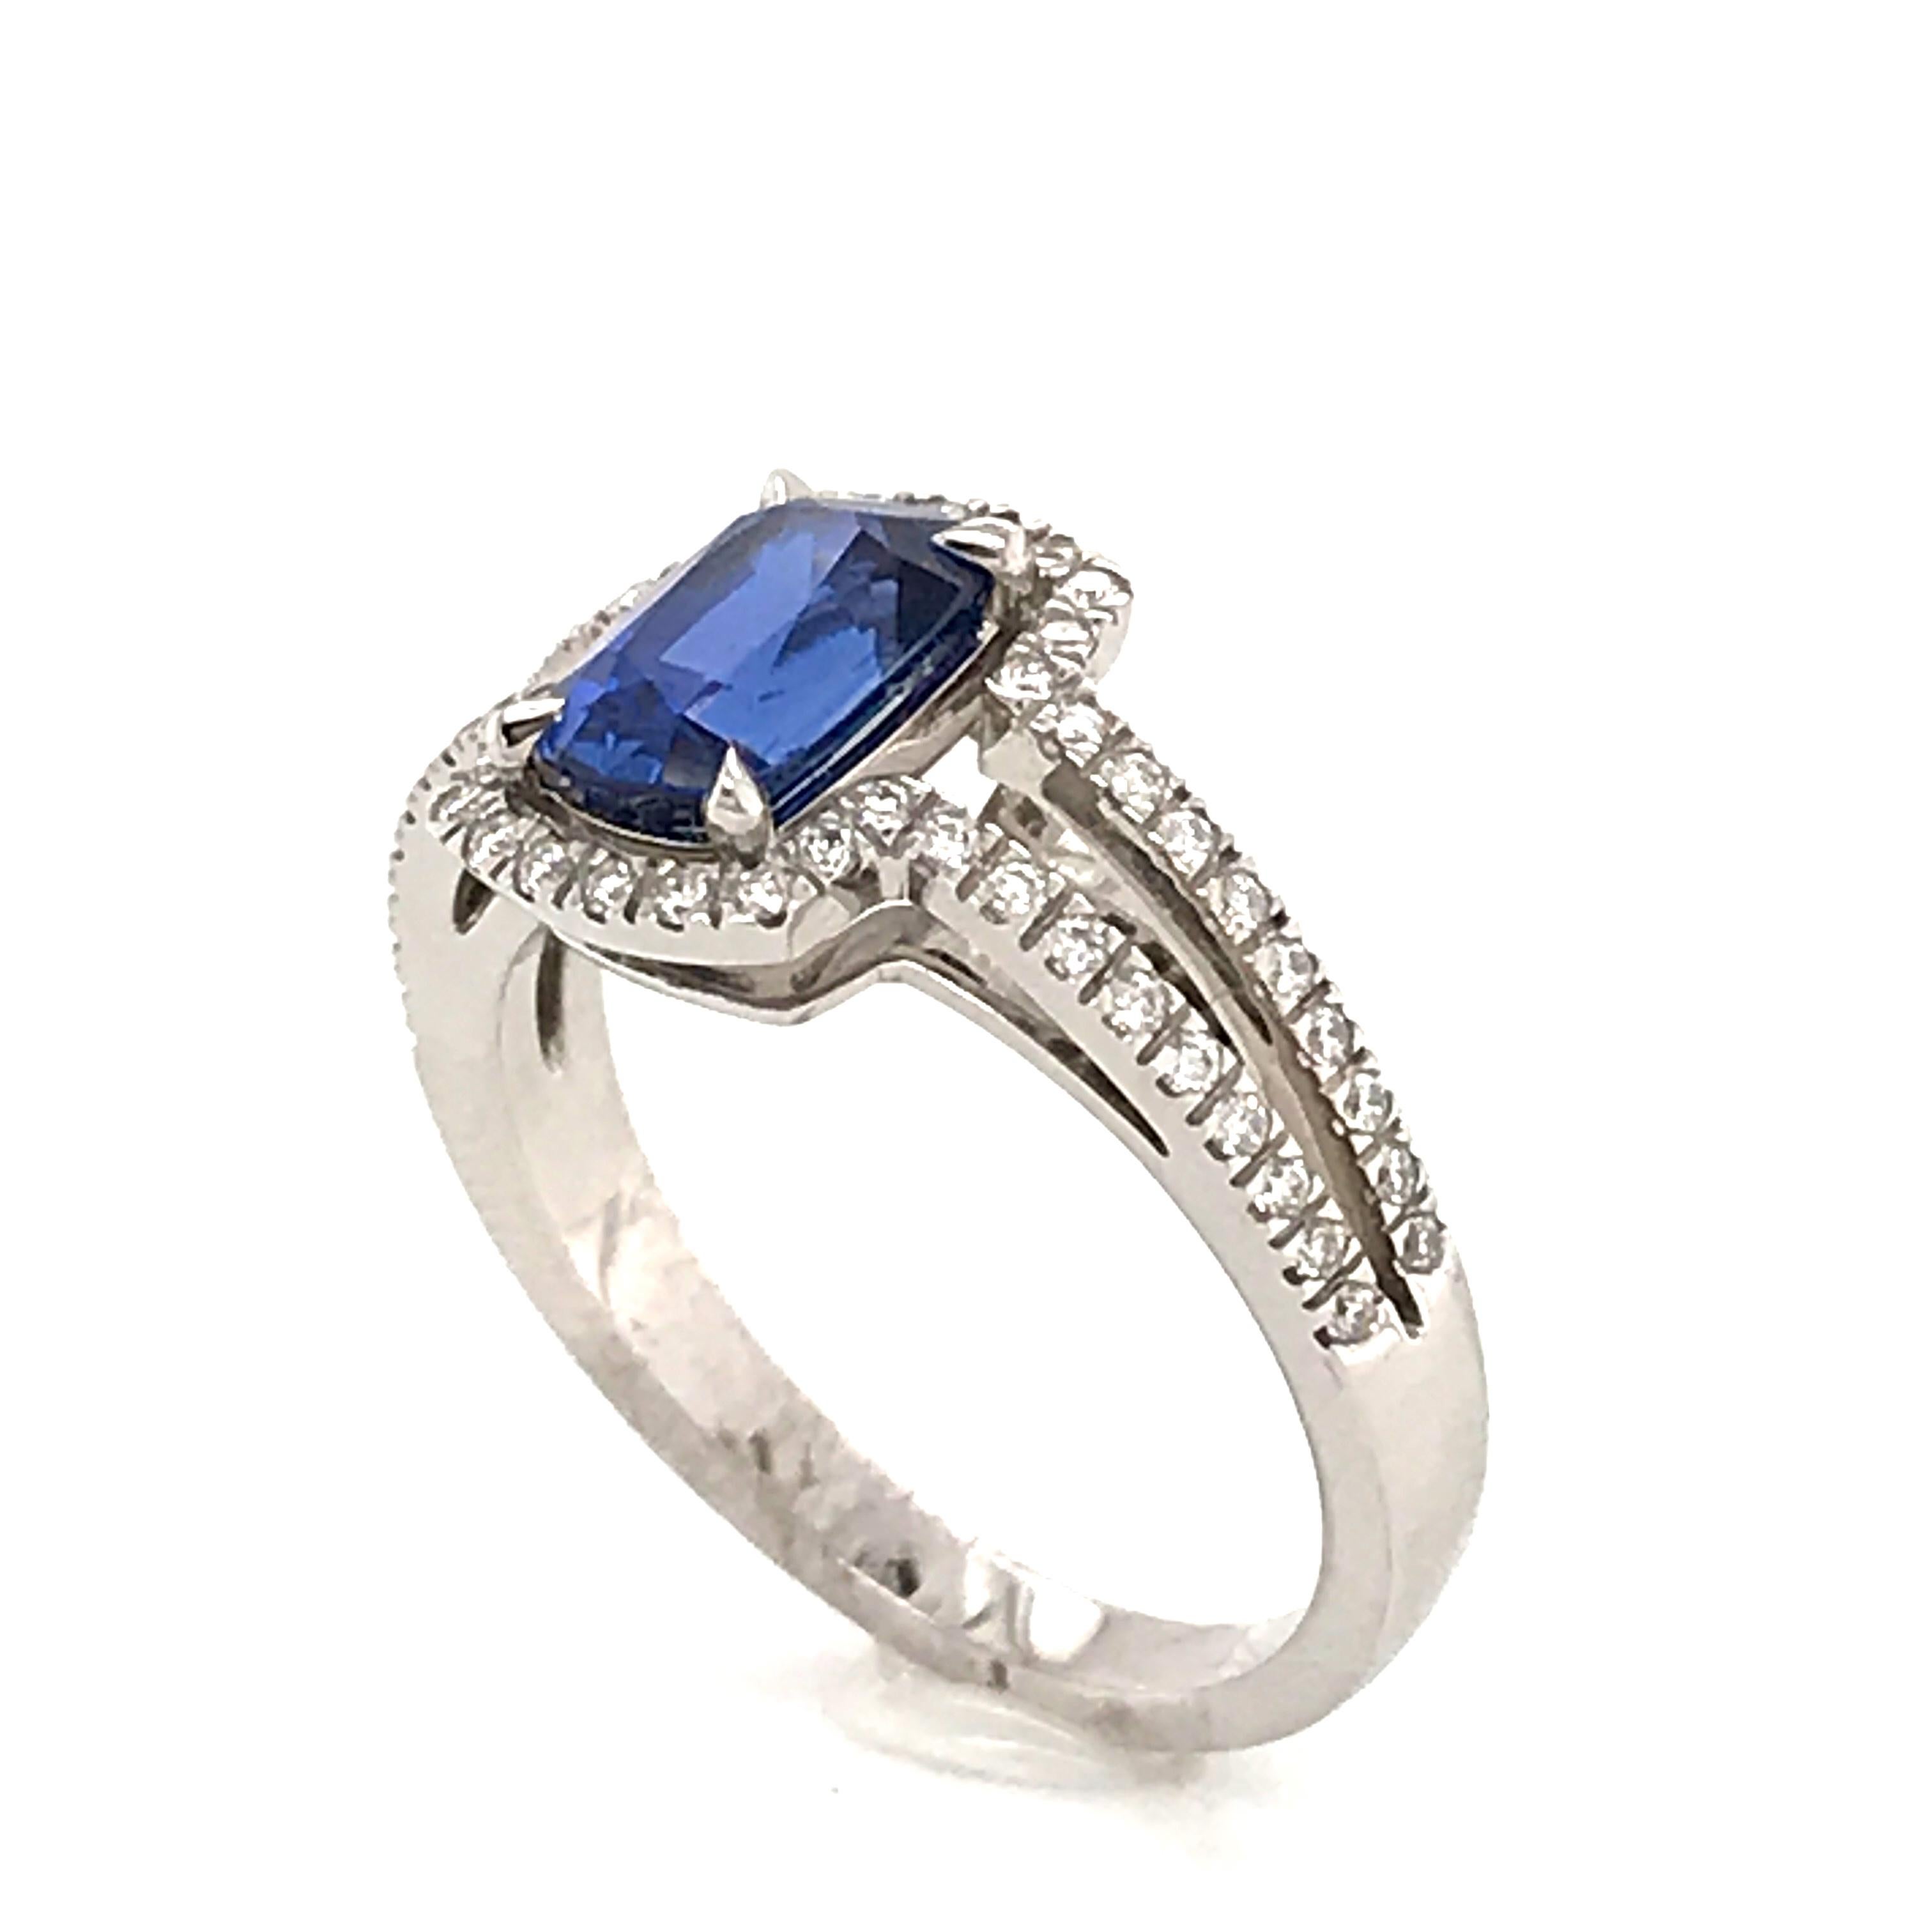 Saphir Ceylan and Whites Diamonds on White Gold 18 Karat Engagement Ring 4